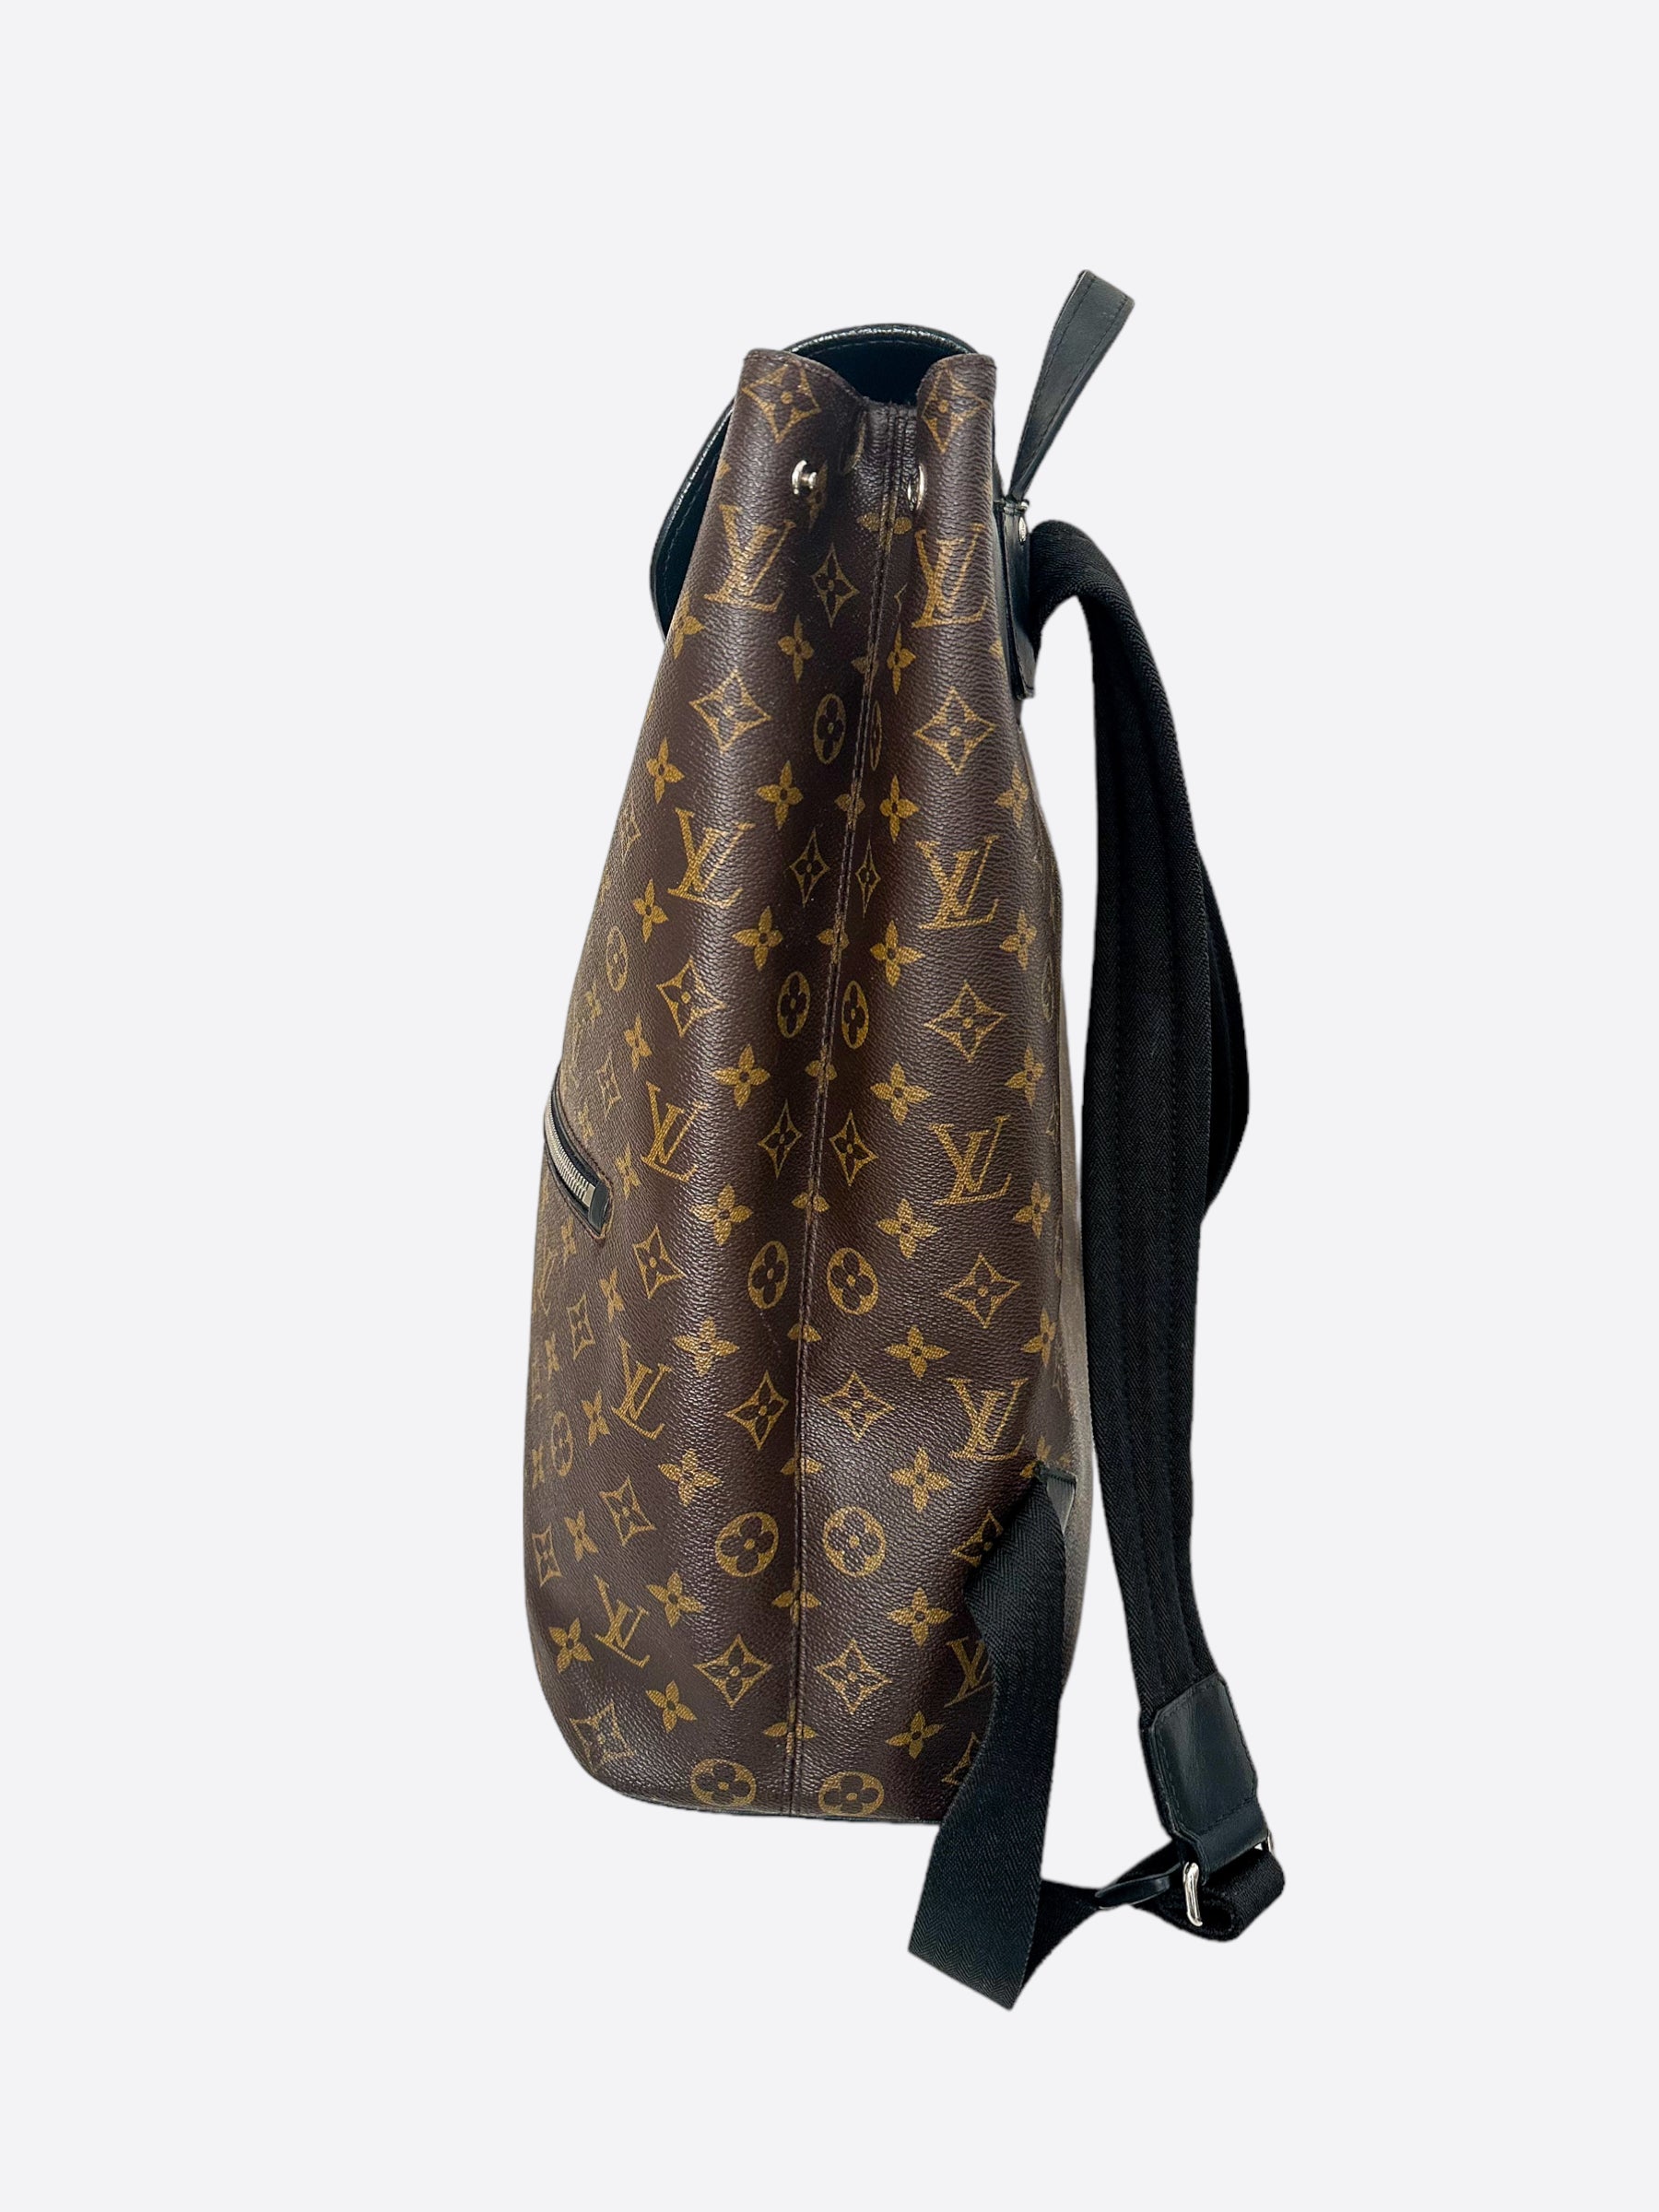 Louis Vuitton Palk Macassar Backpack